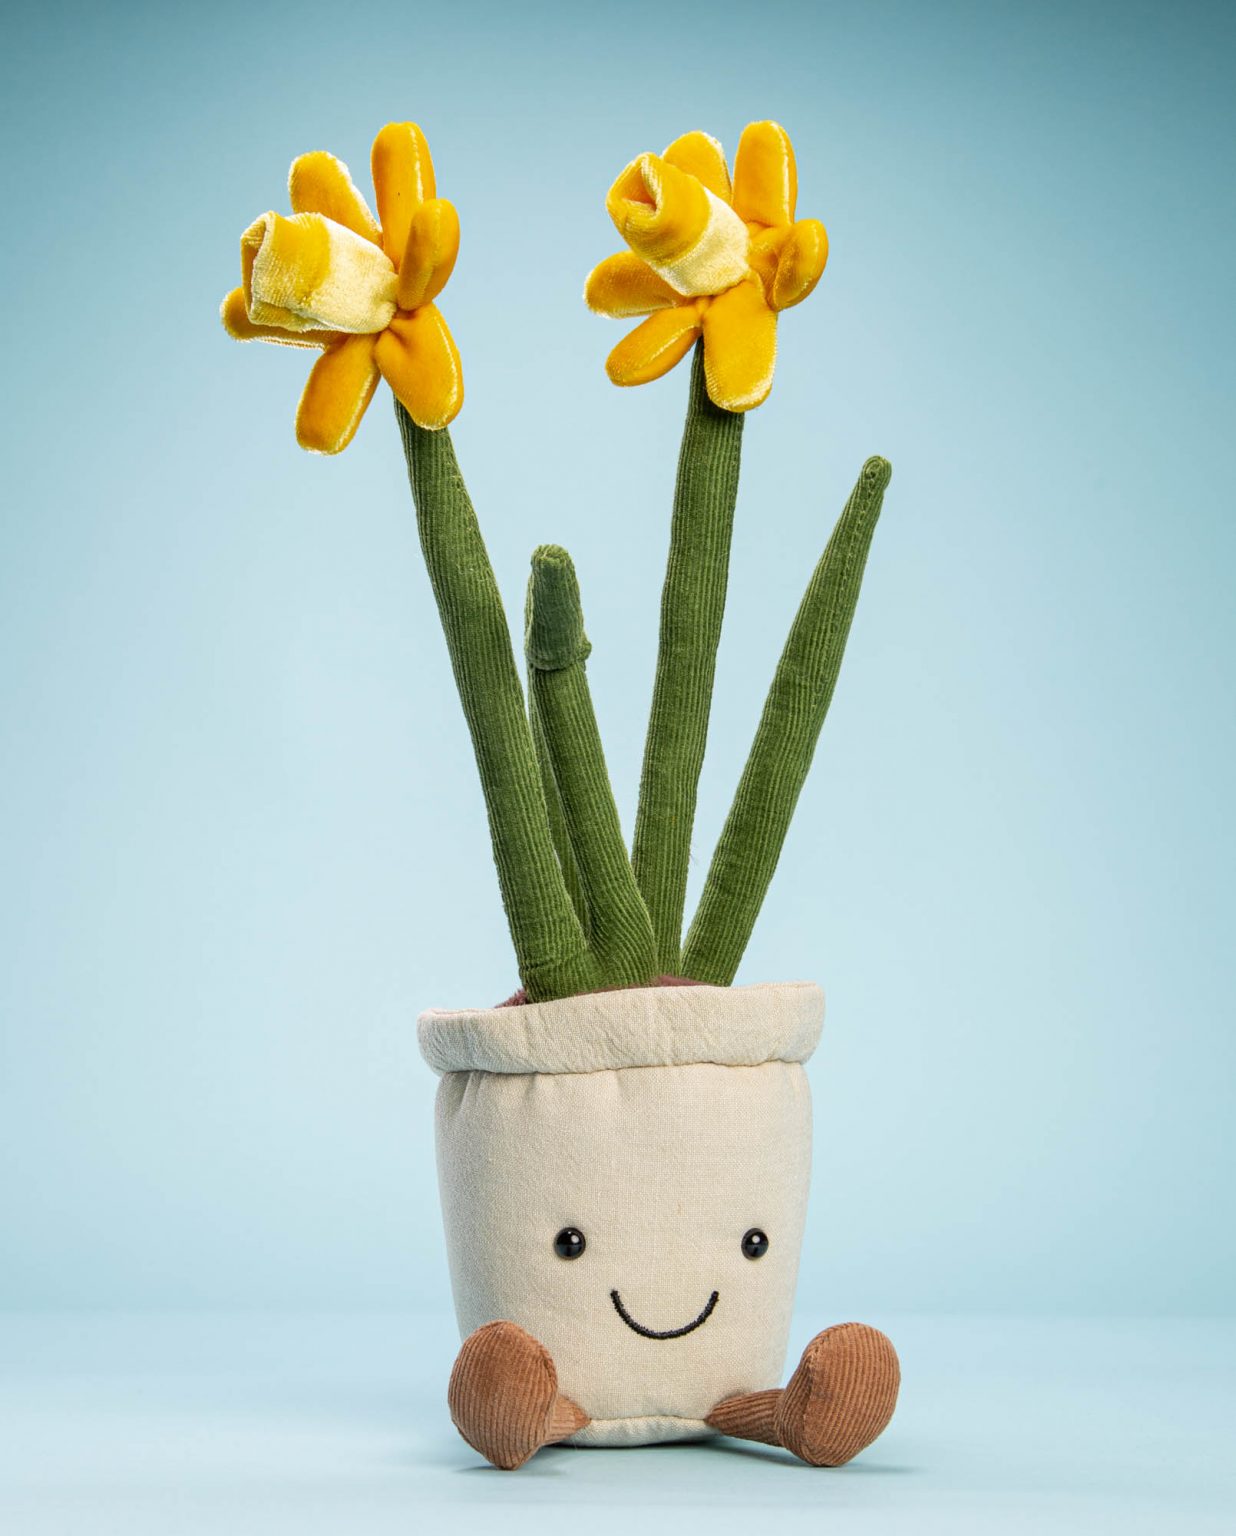 Daffodil flower soft toy gift